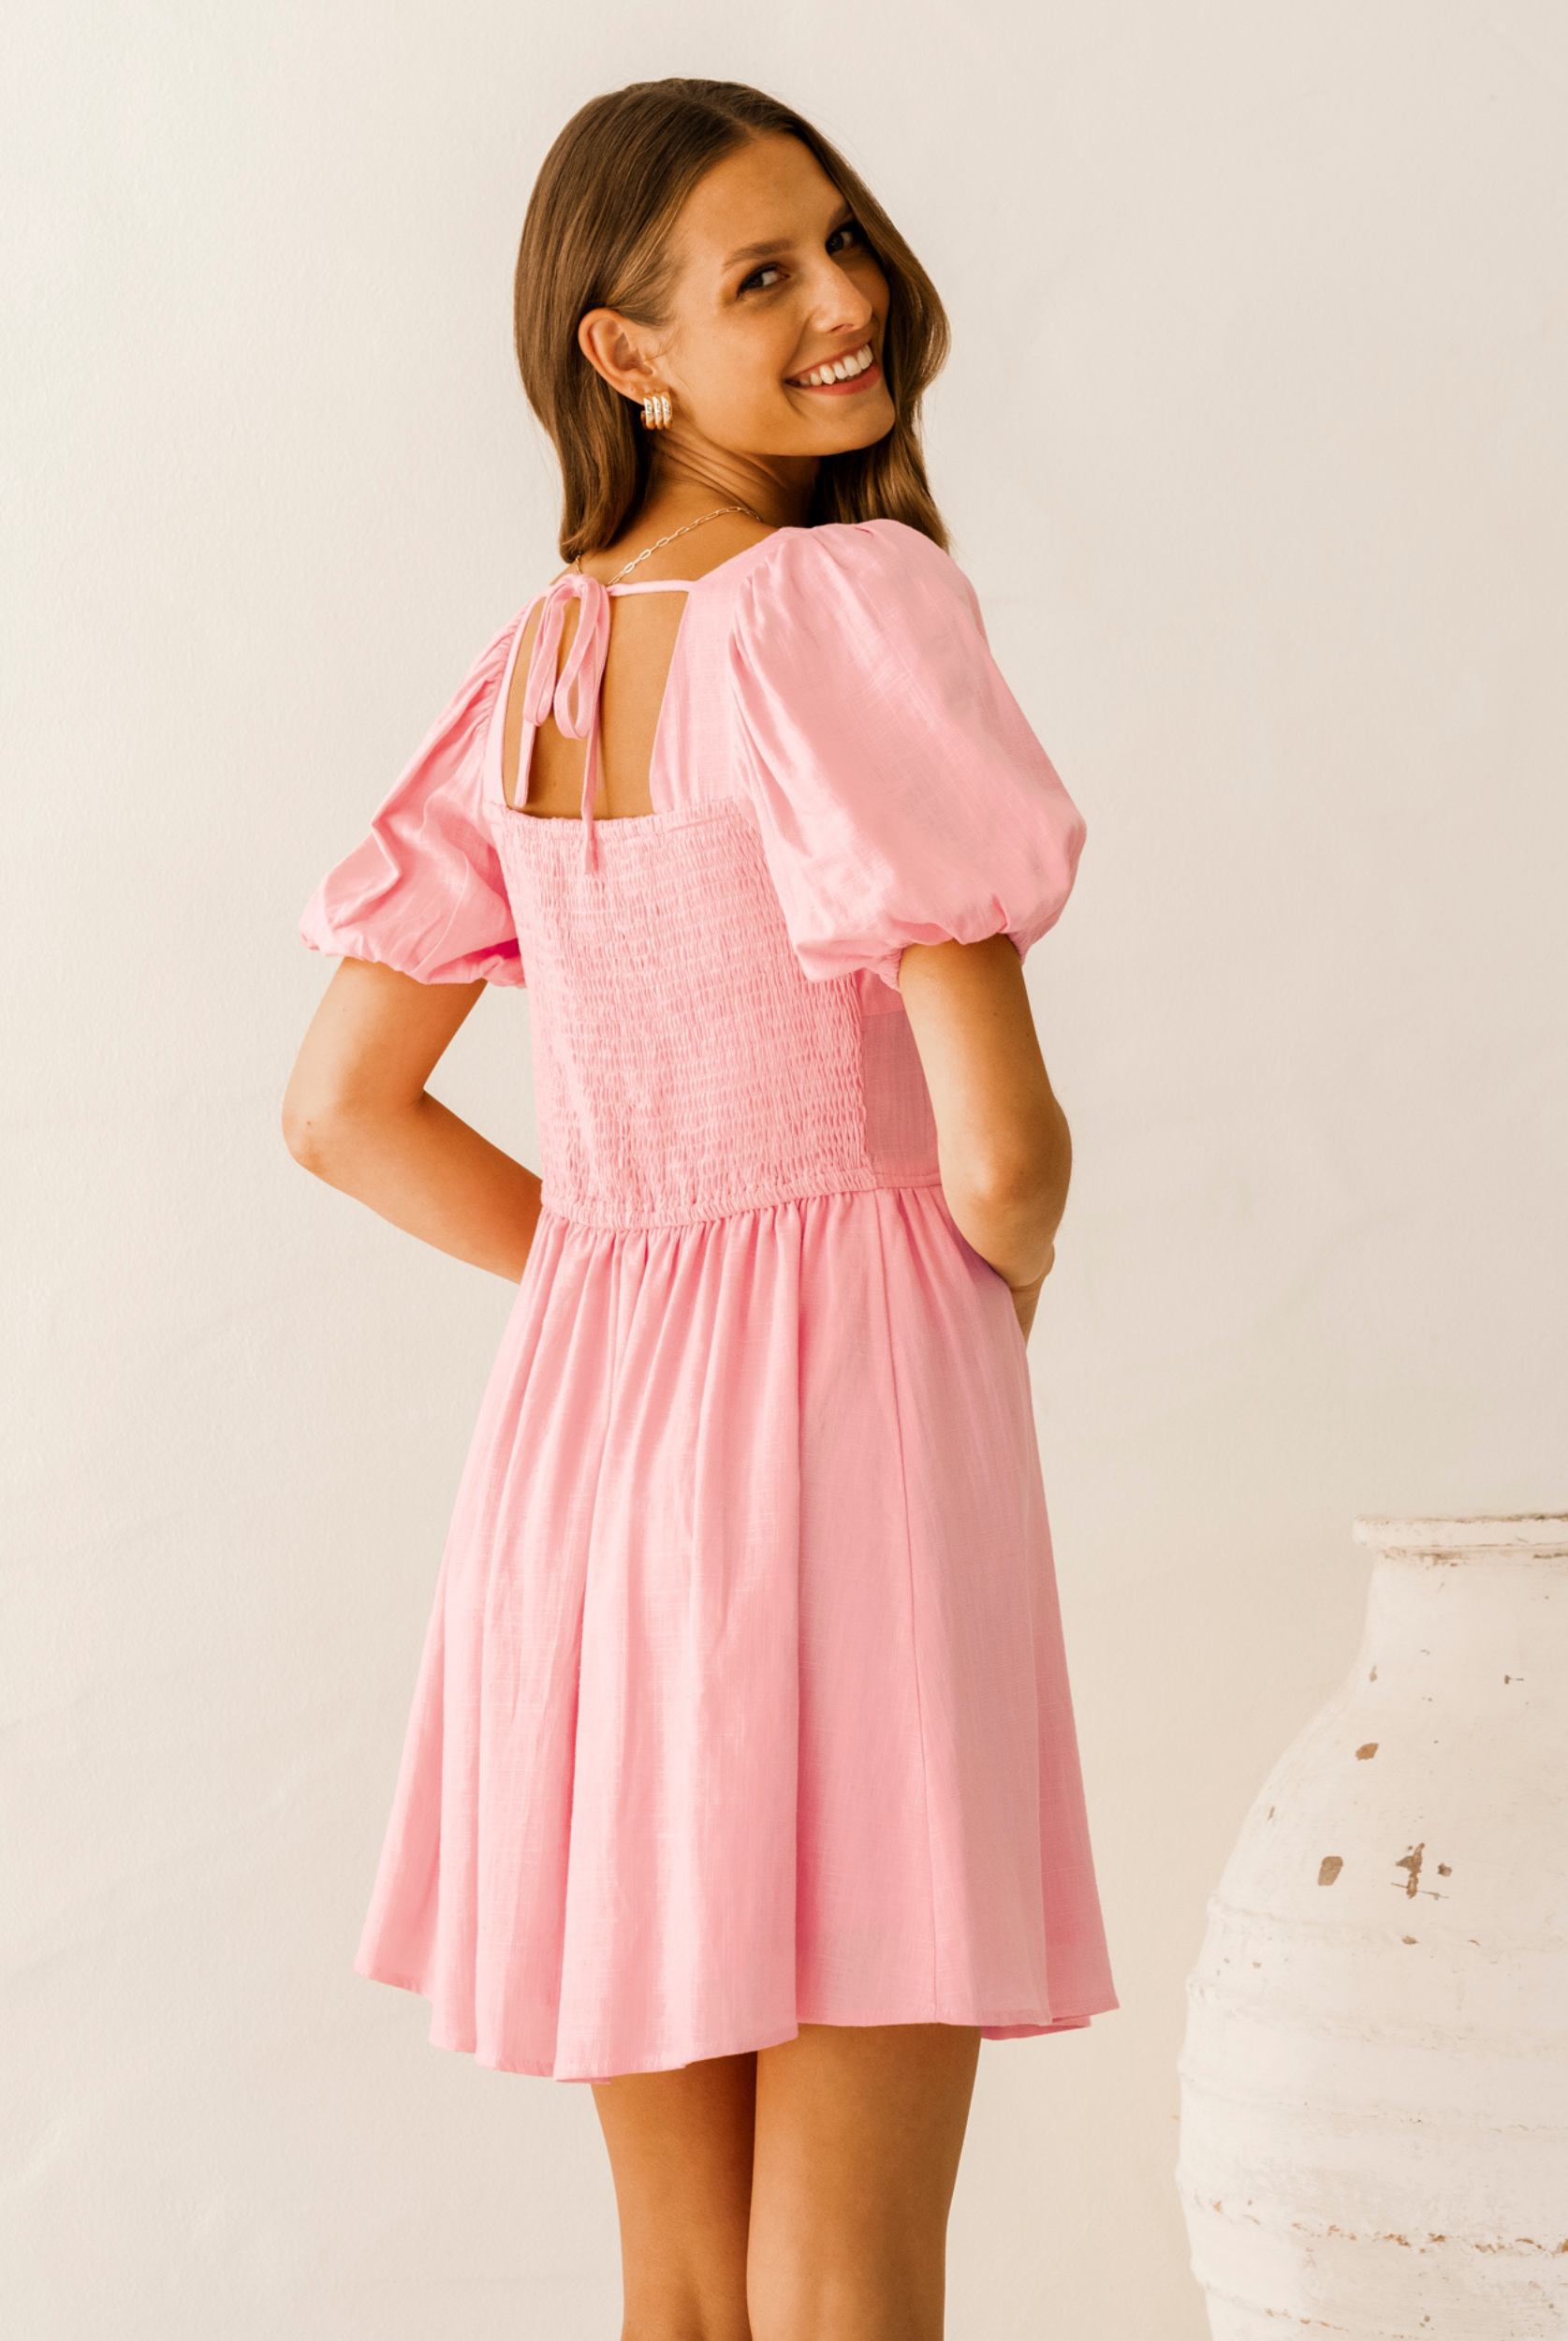 Model wearing Paper Heart Pink Mini Dress from Paper Heart